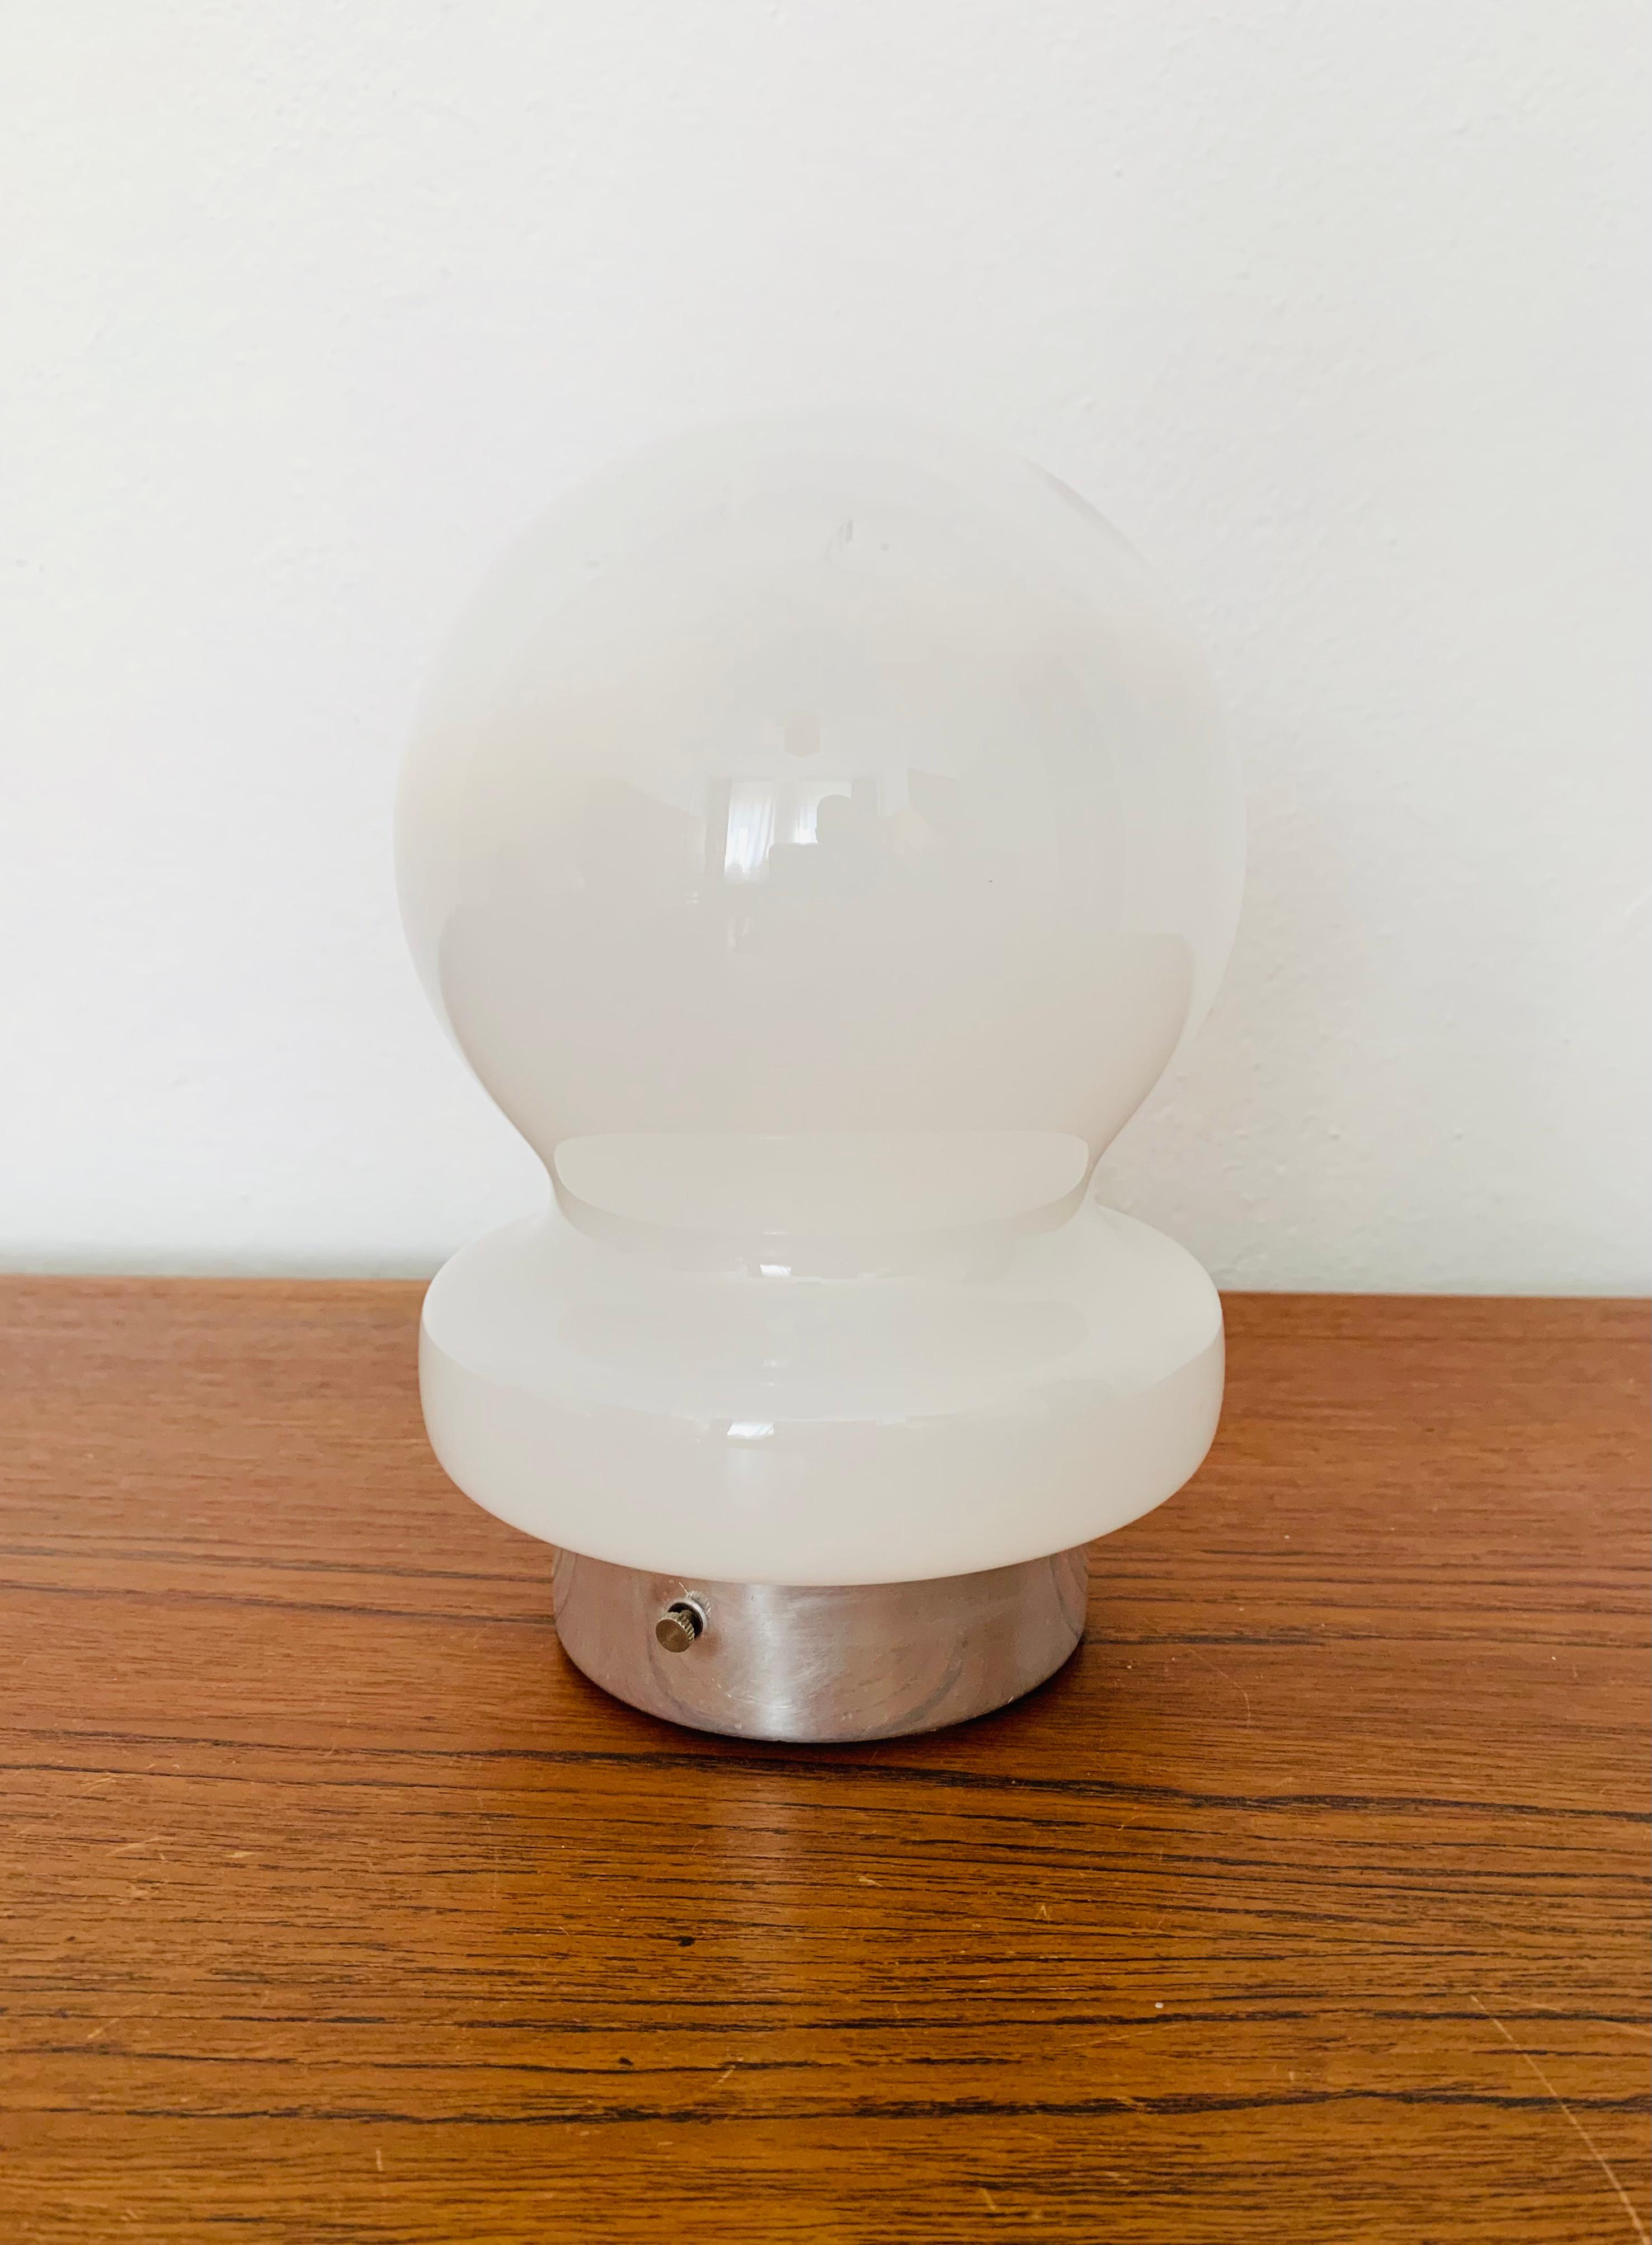 Charmante petite lampe de table en verre de Murano des années 1960.
Cette lampe est très noble et constitue un objet de design très spécial.
Le dégradé de couleurs crée une lumière agréable.

Condit :

Très bon état vintage avec de légers signes